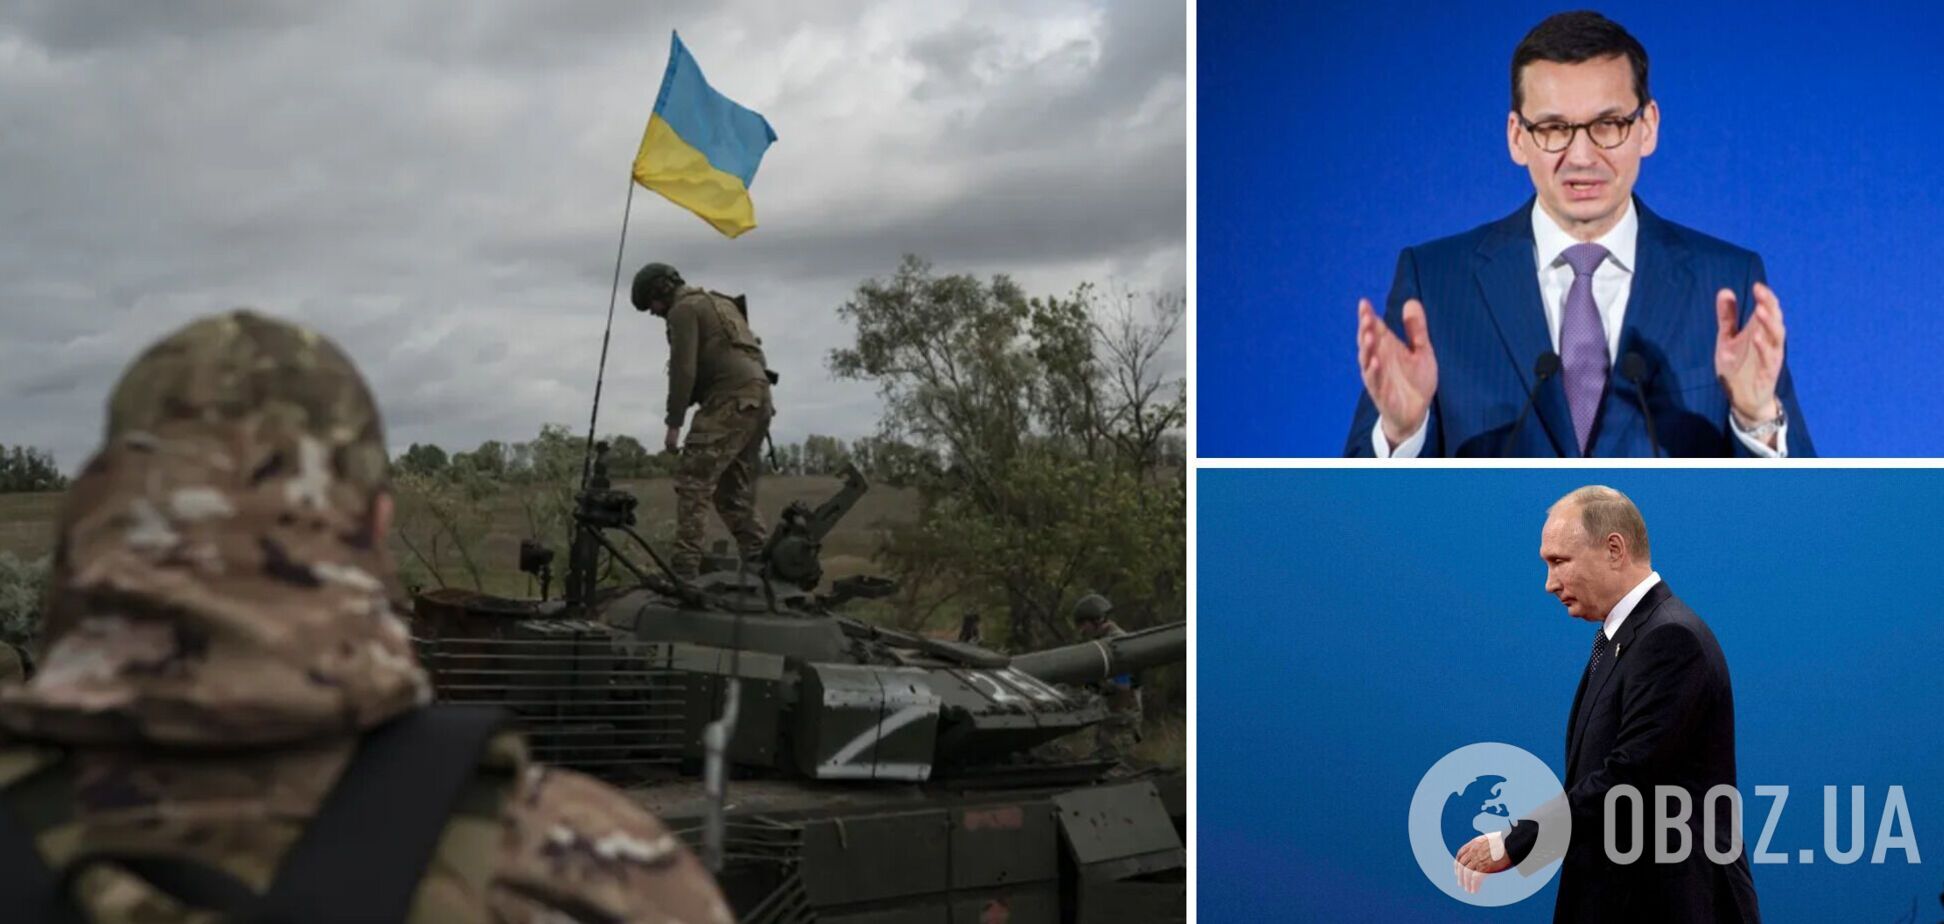 Режим Путина слабеет с каждым днем, чаша весов победы поворачивается на сторону Украины, – Моравецкий